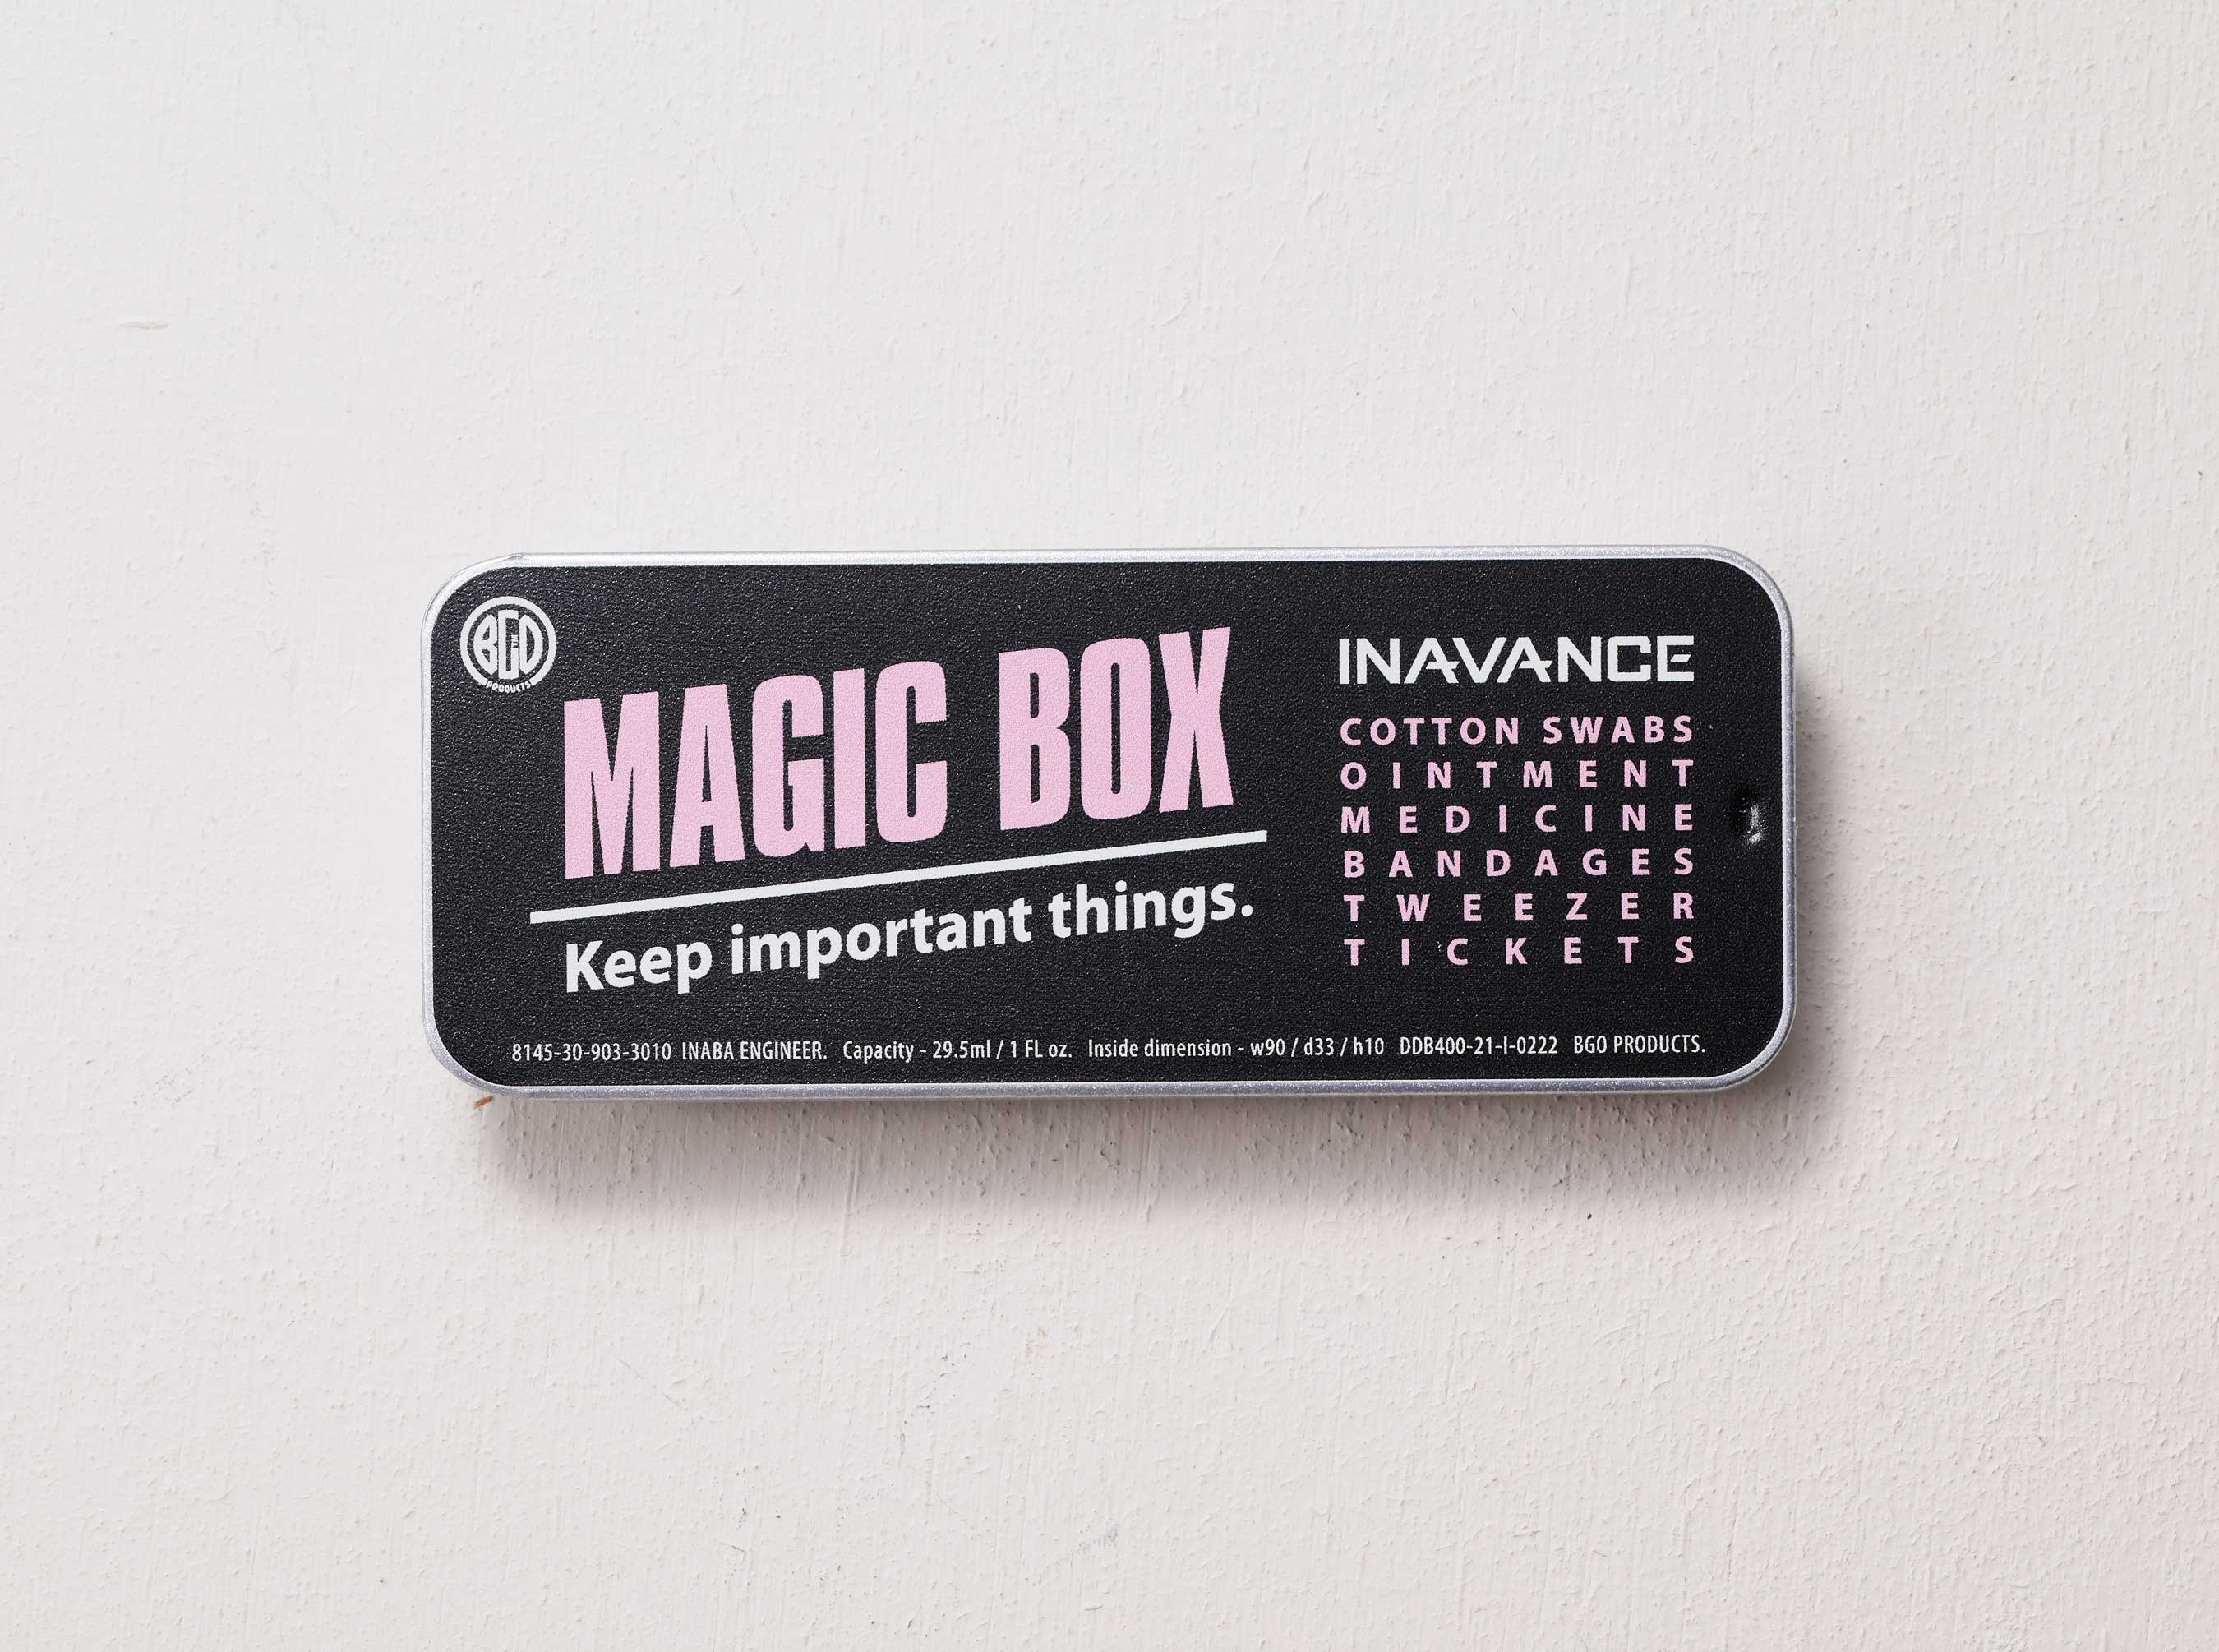 MAGIC BOX INAVANCE